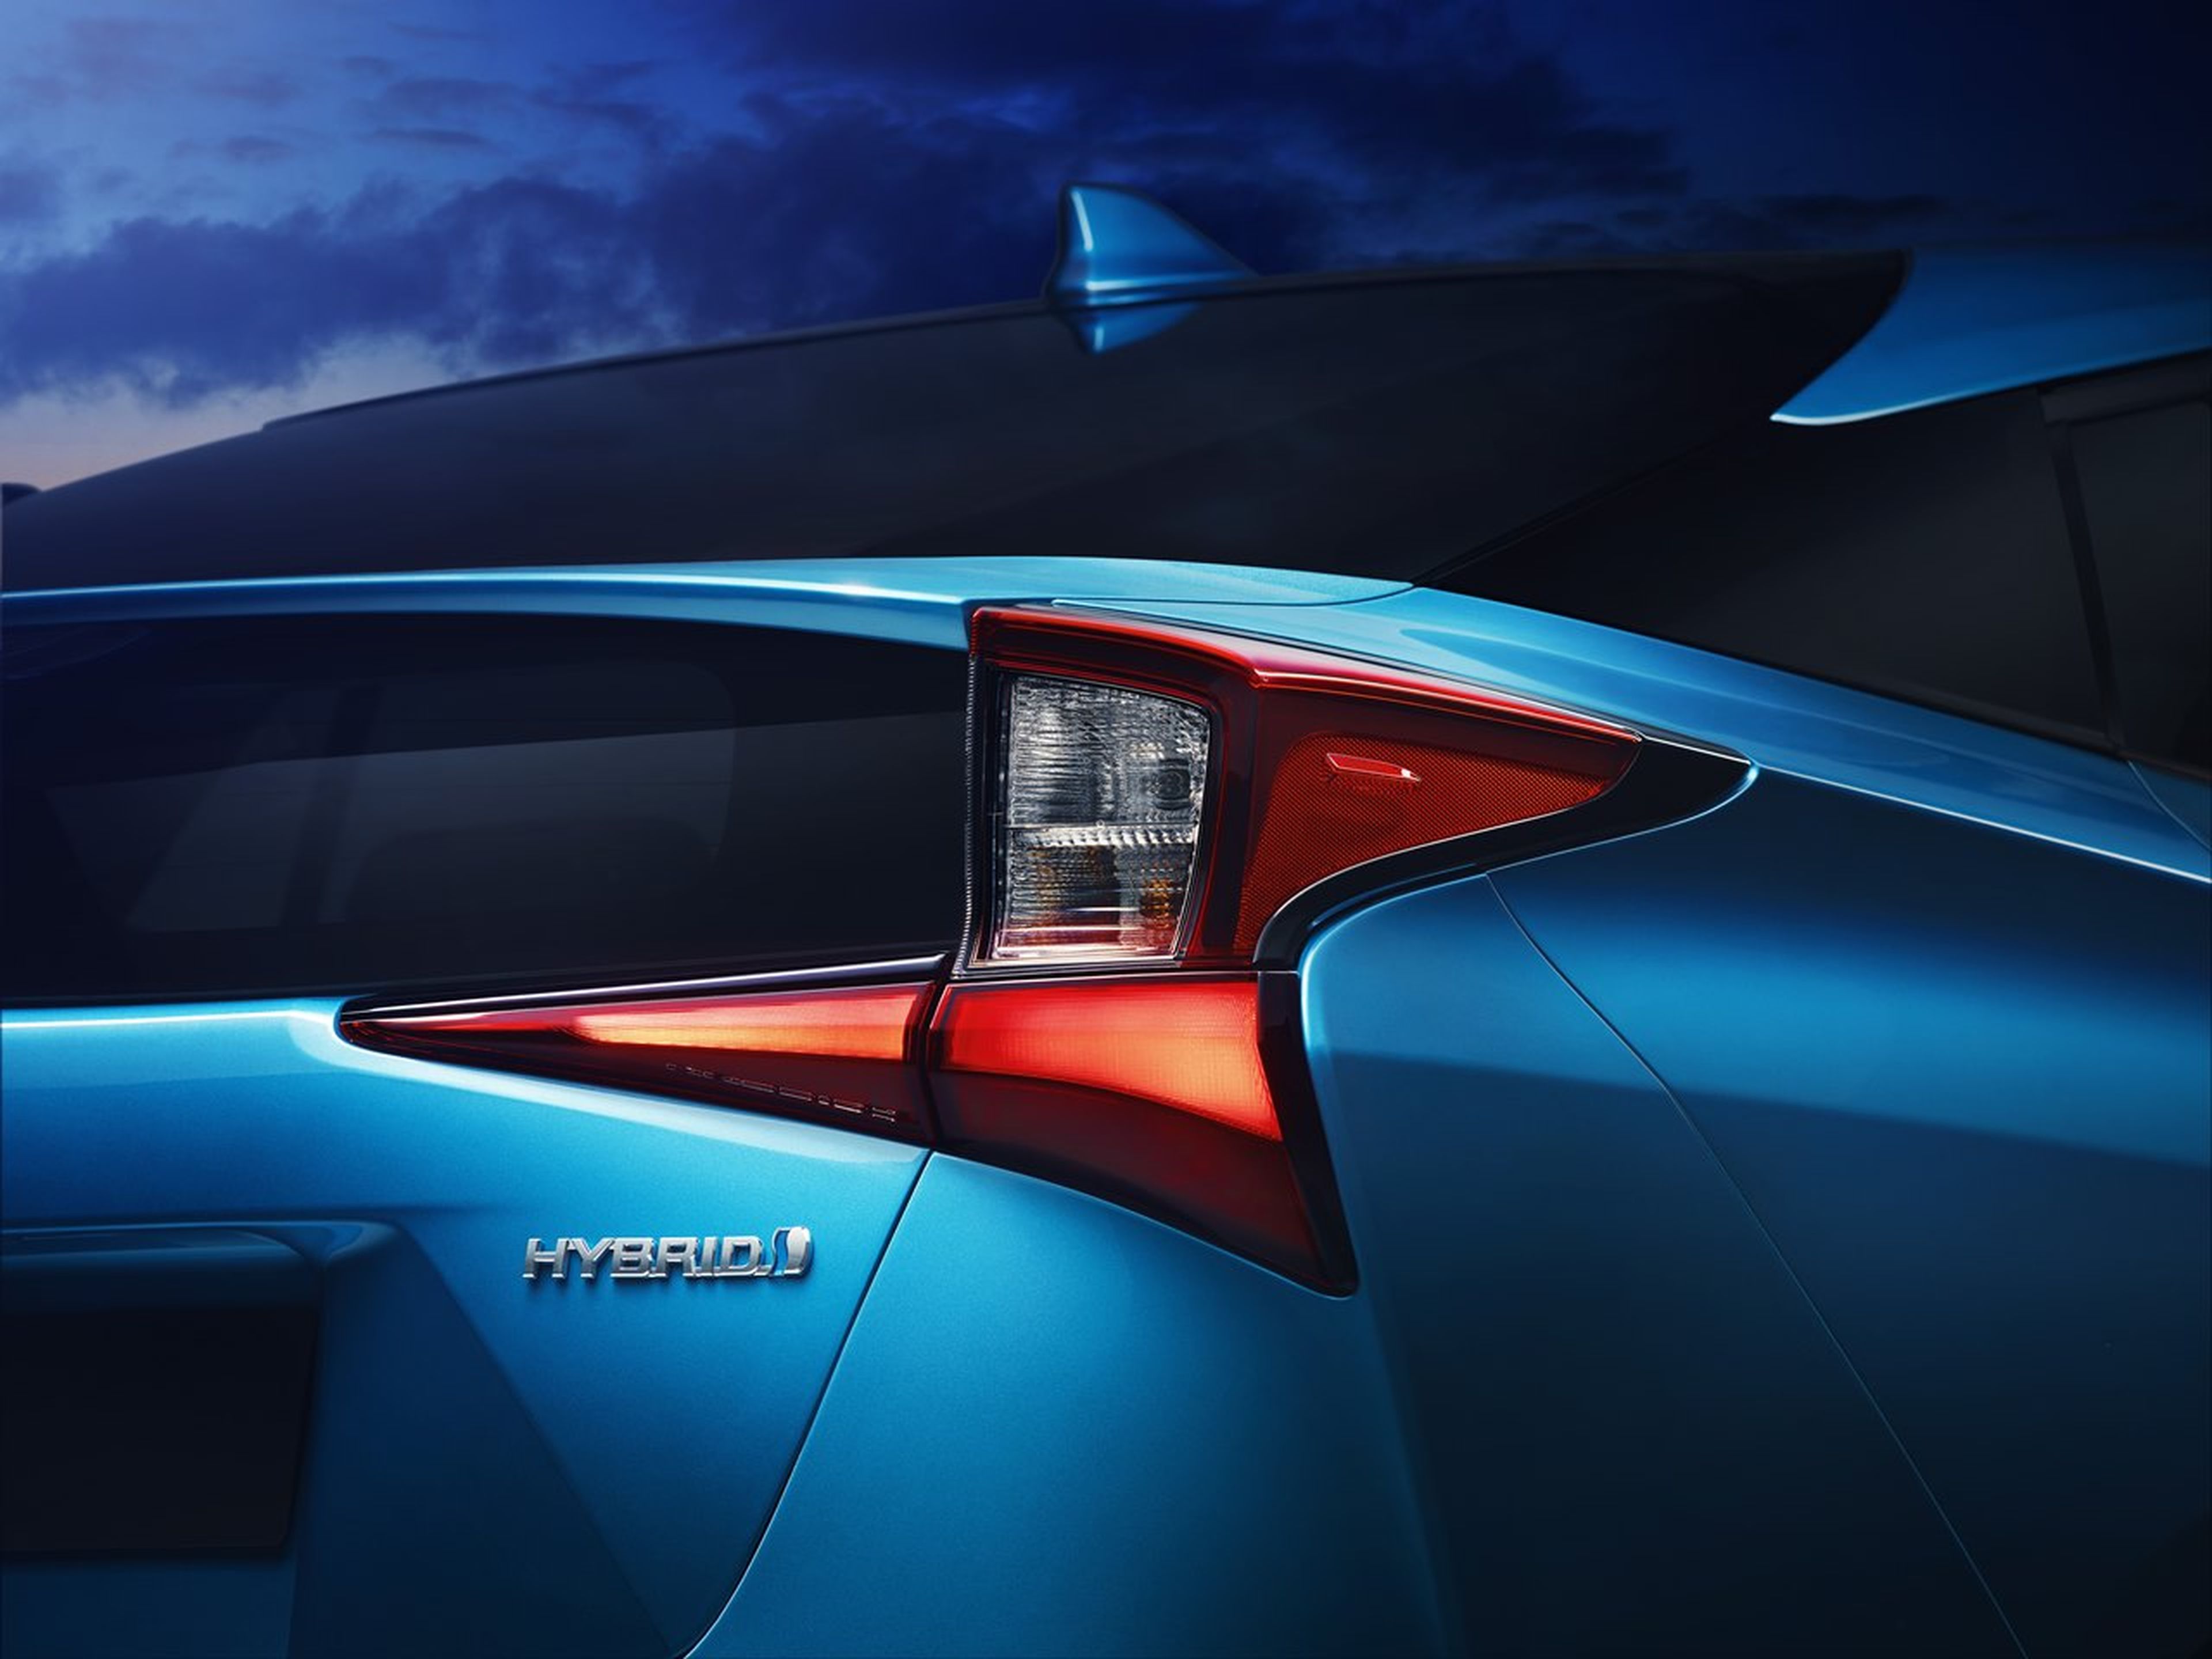 Toyota Hybrid hybrid